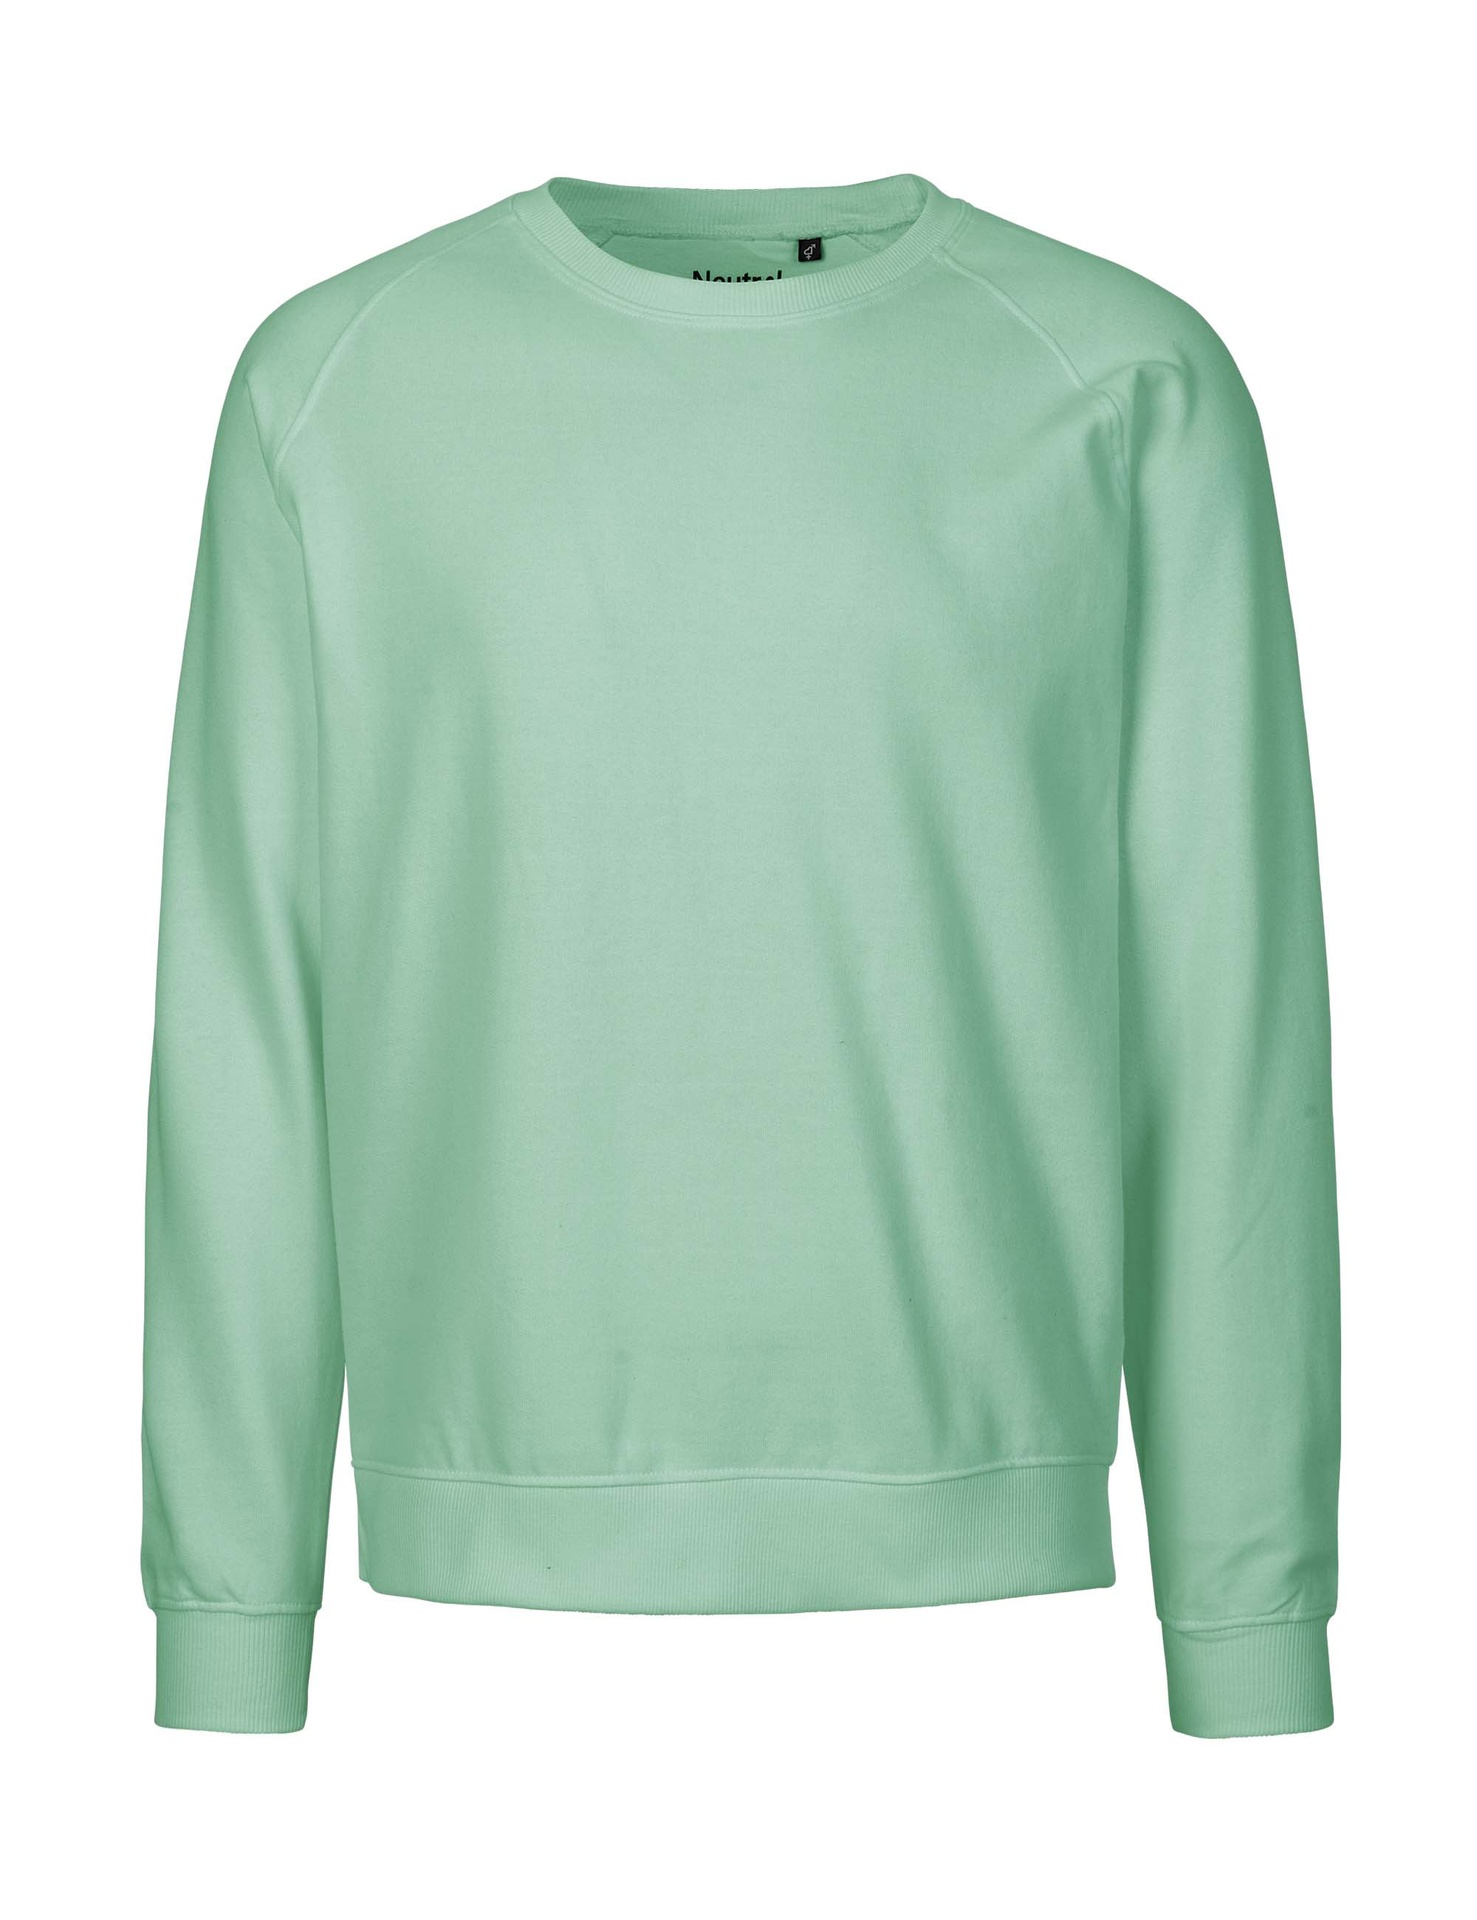 [PR/02827] Unisex Sweatshirt (Dusty Mint 40, XL)